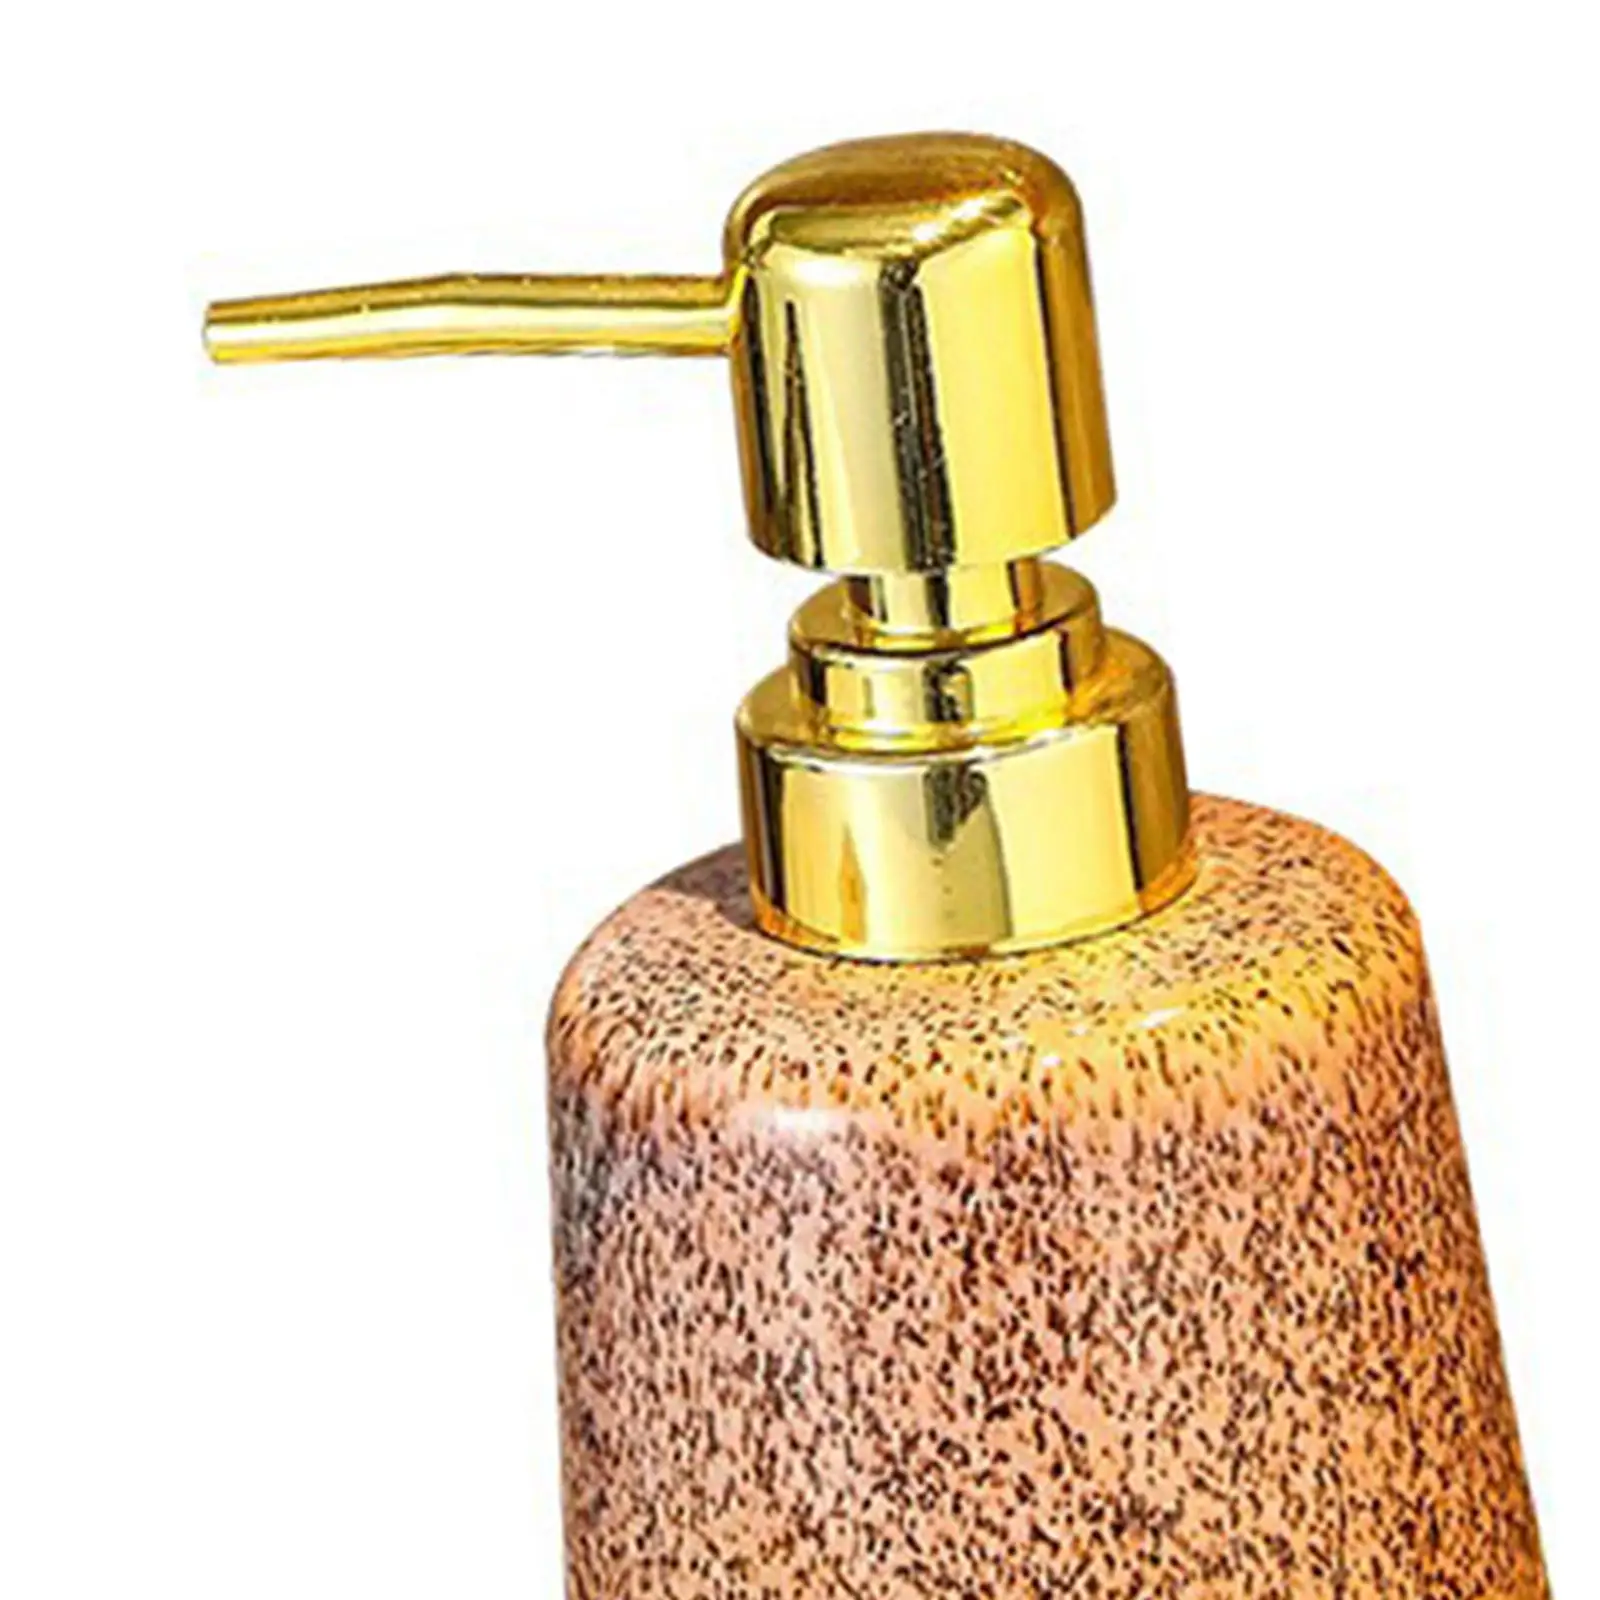 Ceramic Soap Dispenser Vintage Lotion Pump Dispenser Porcelain Shower Gel Dispenser for Bedroom Laundry Kitchen Hotel Decoration